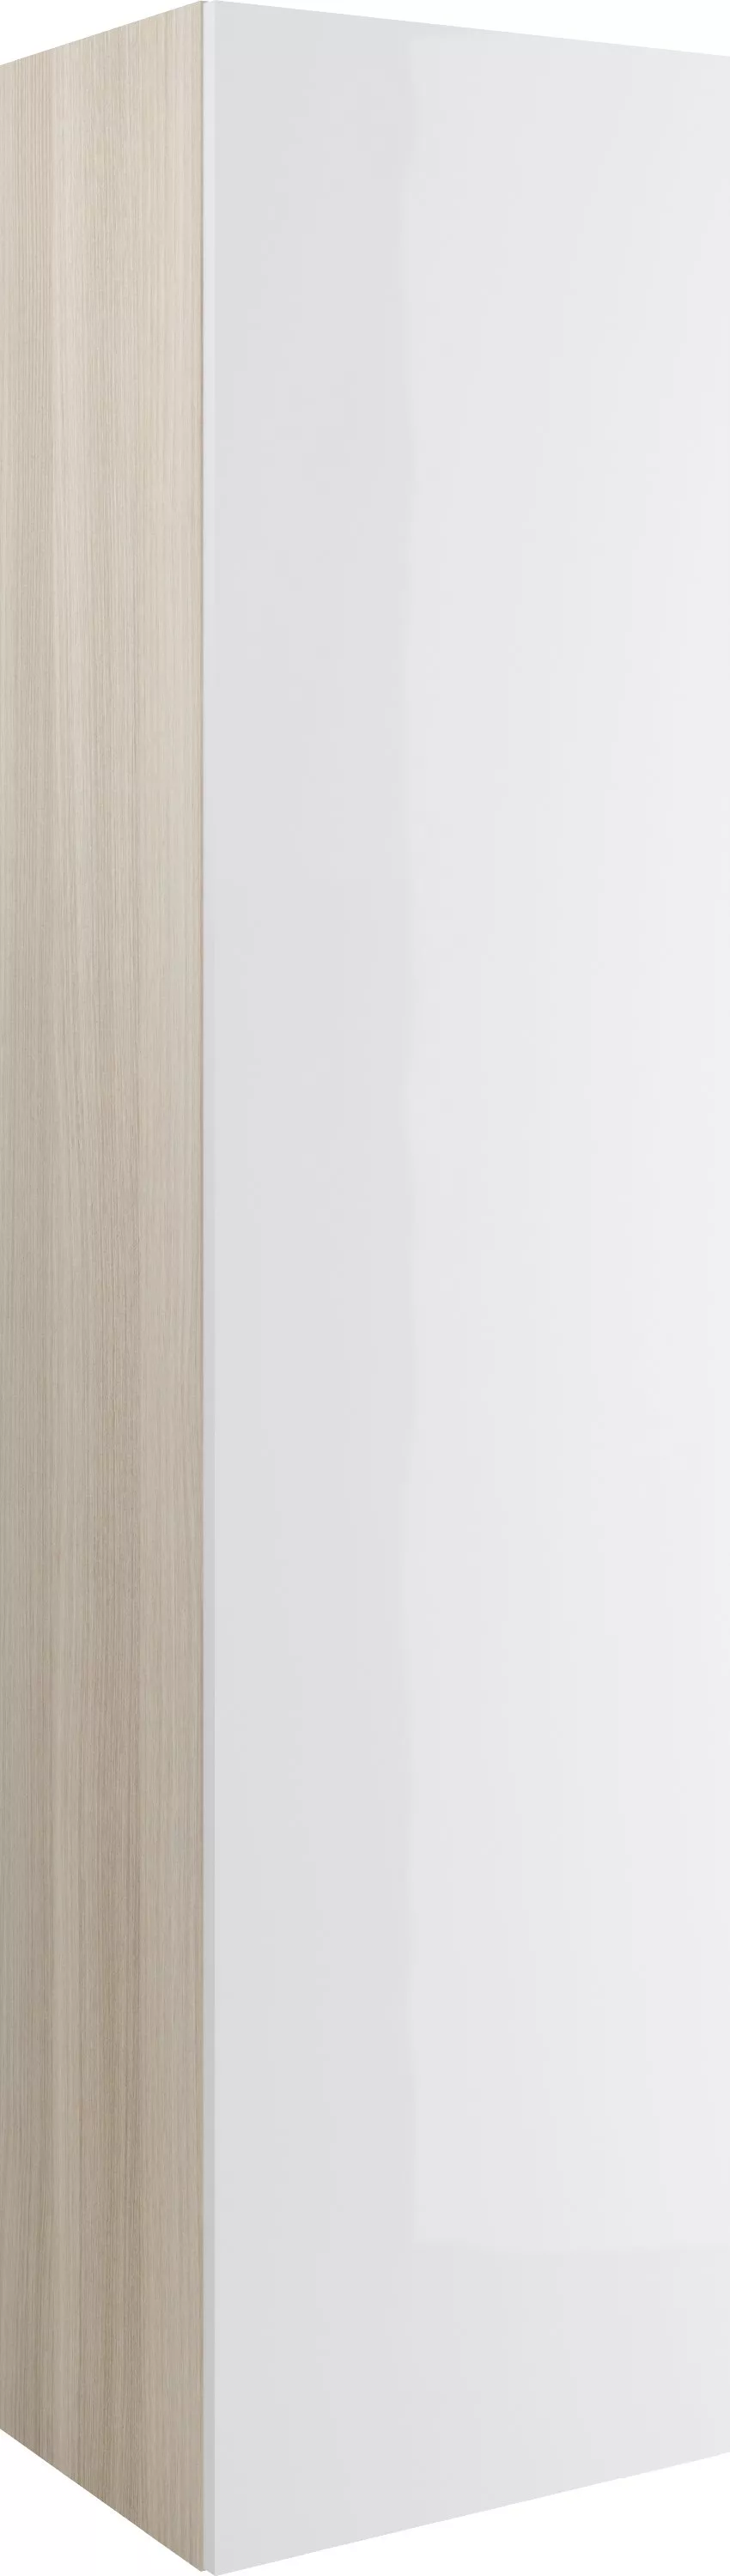 Шкаф-пенал Cersanit Smart ясень, белый, цвет светлое дерево SL-SMA/Wh - фото 1